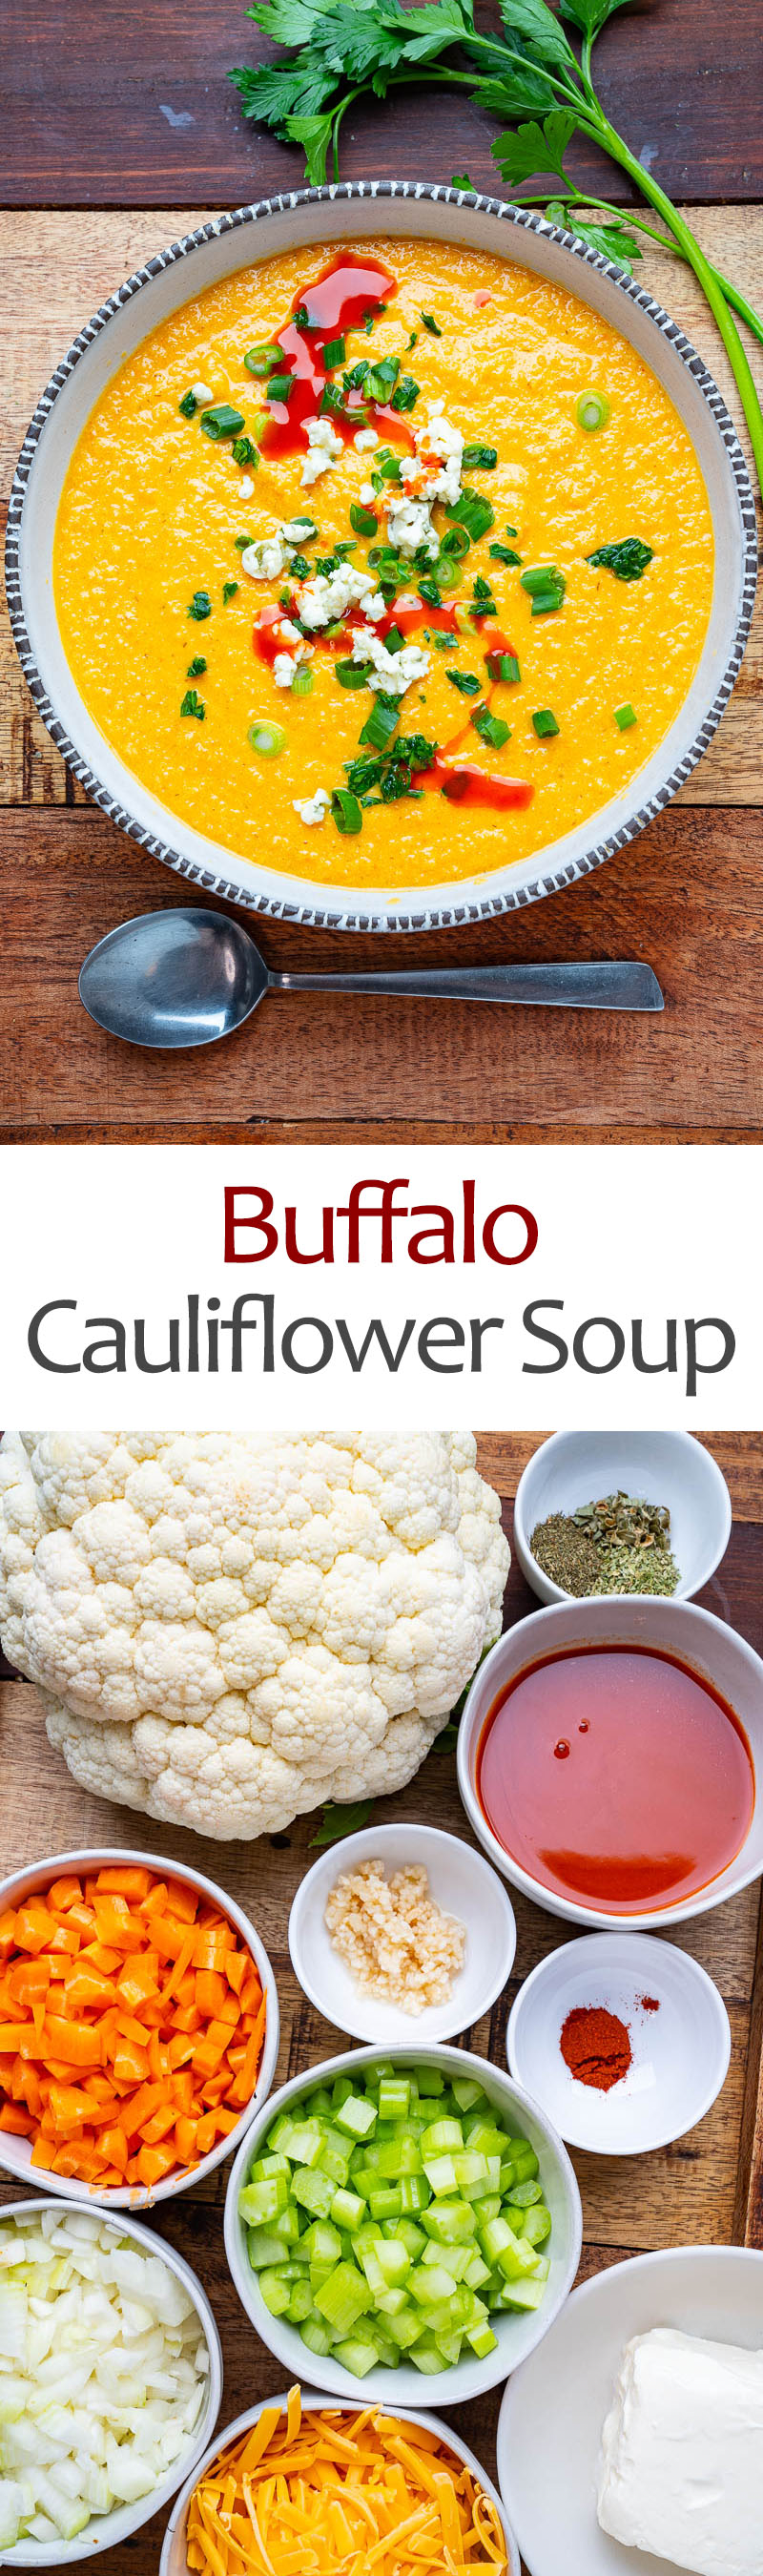 Buffalo Cauliflower Soup